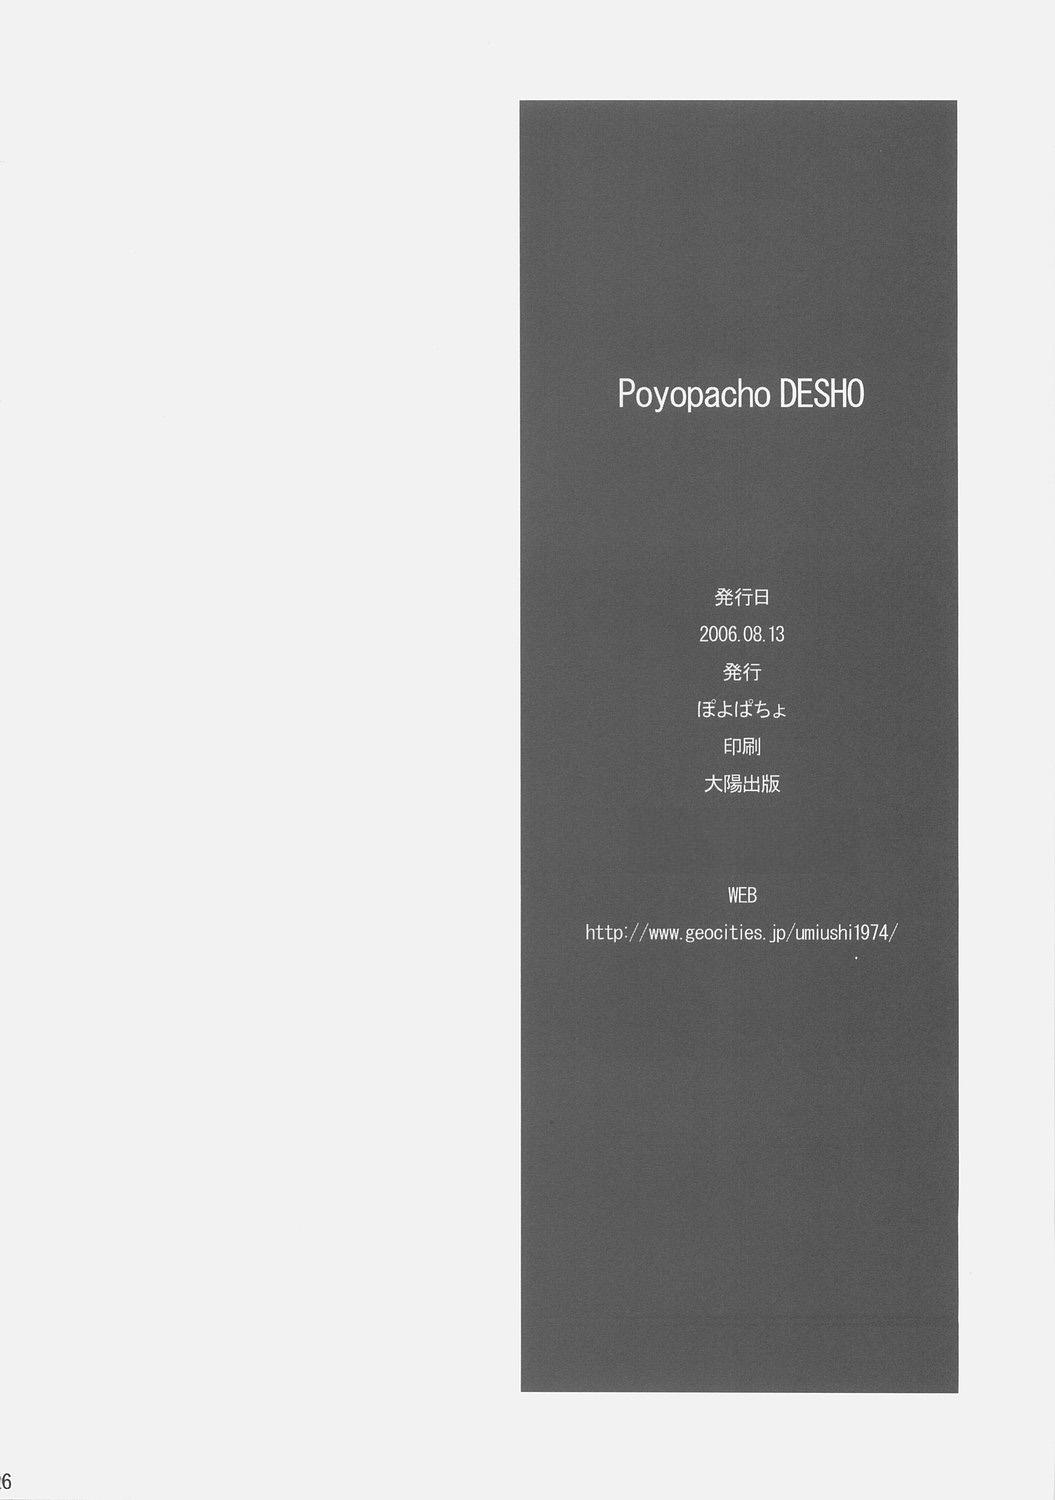 Poyopacho DESHO 24